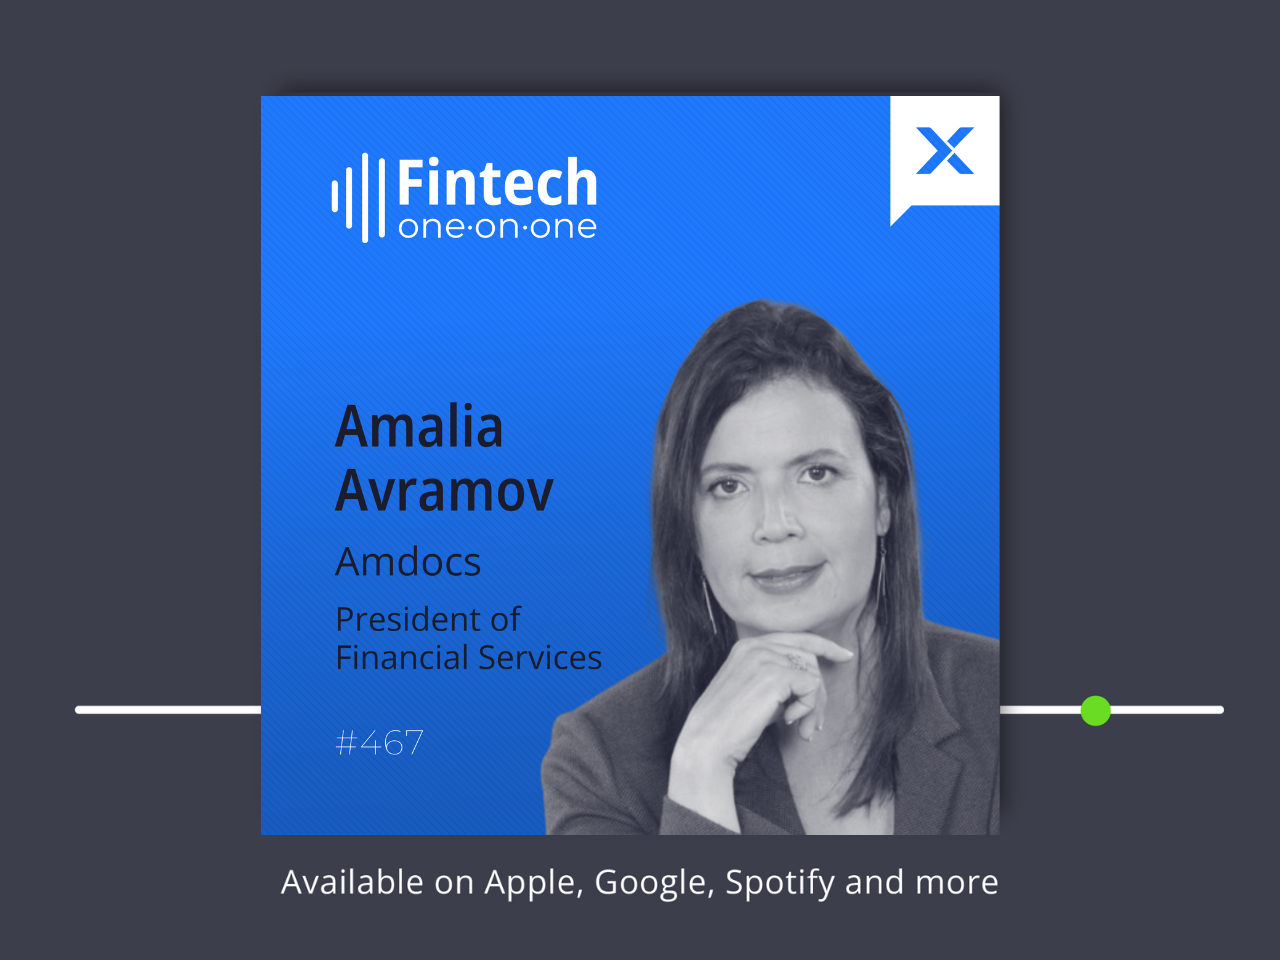 Amalia Avramov, Chủ tịch Dịch vụ Tài chính, Amdocs